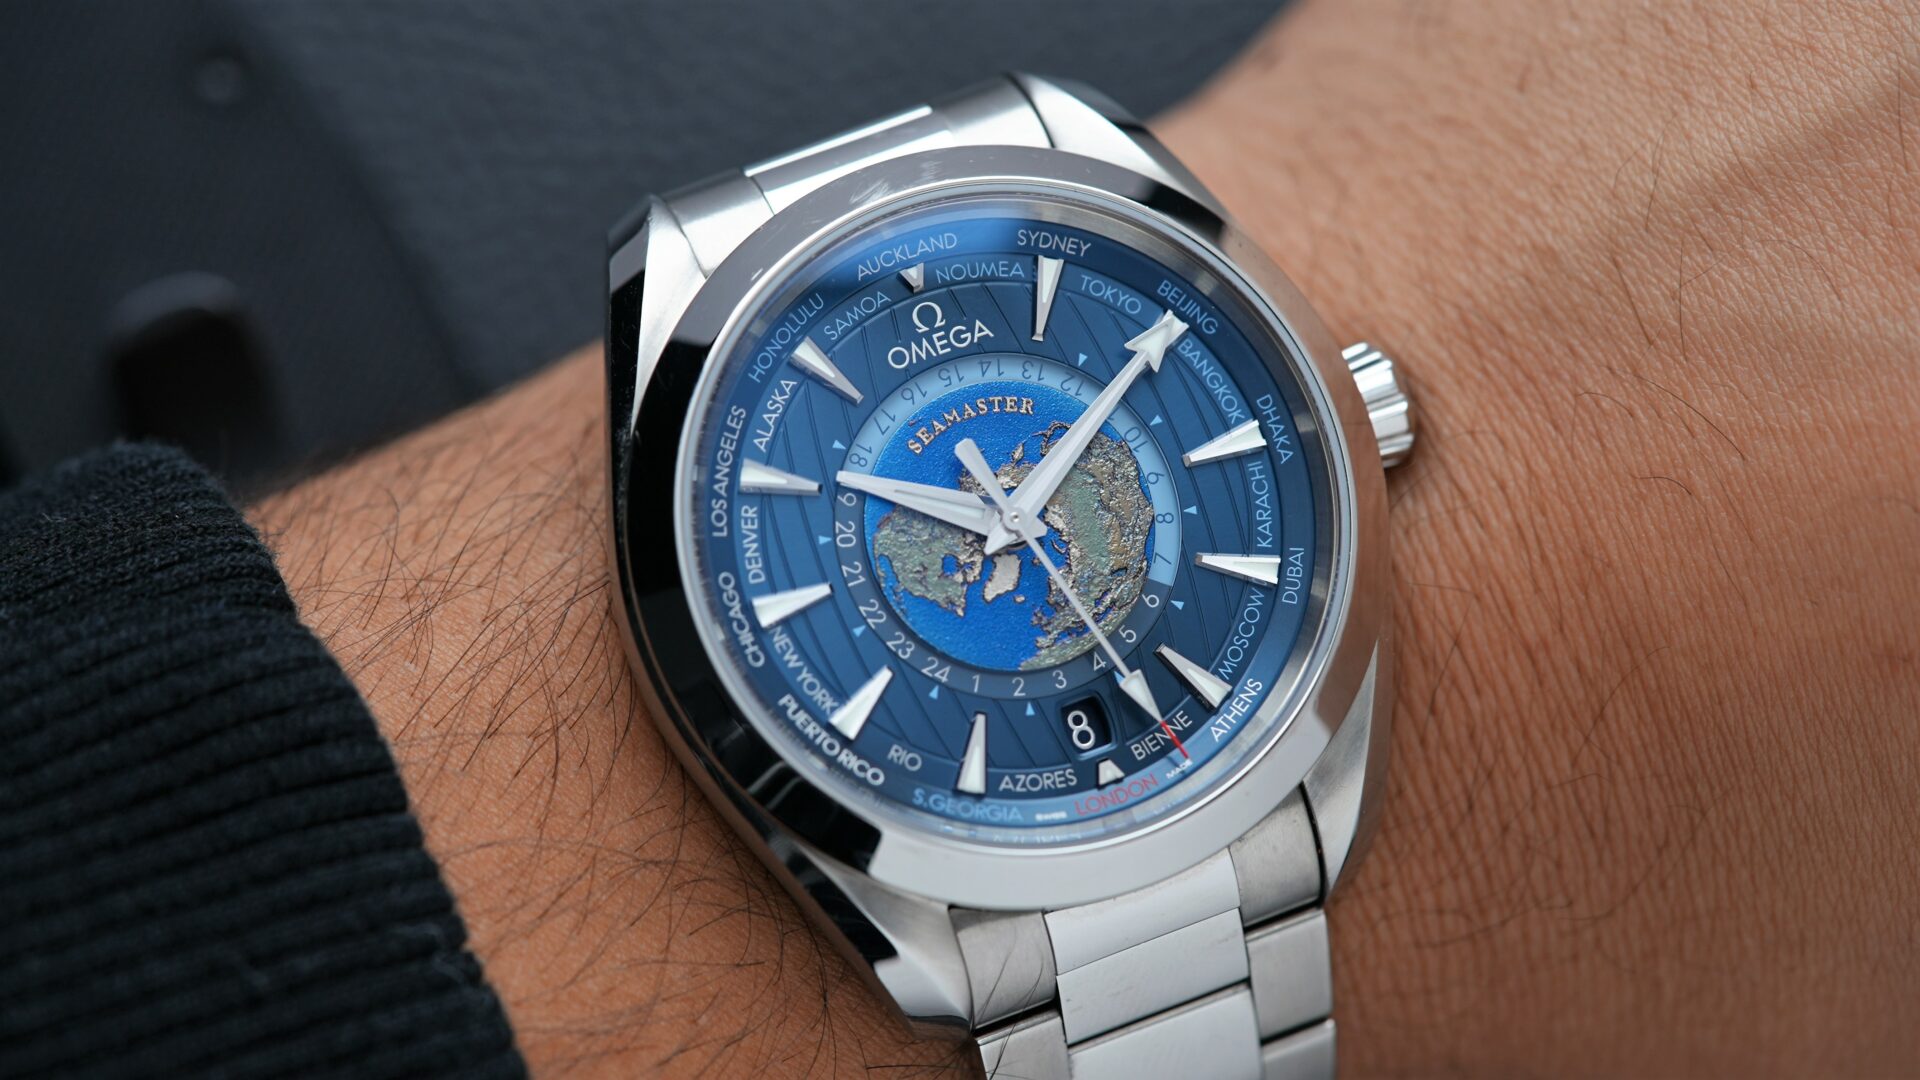 Omega Seamaster Aqua Terra 220.10.43.22.03.001 watch featured on the wrist.